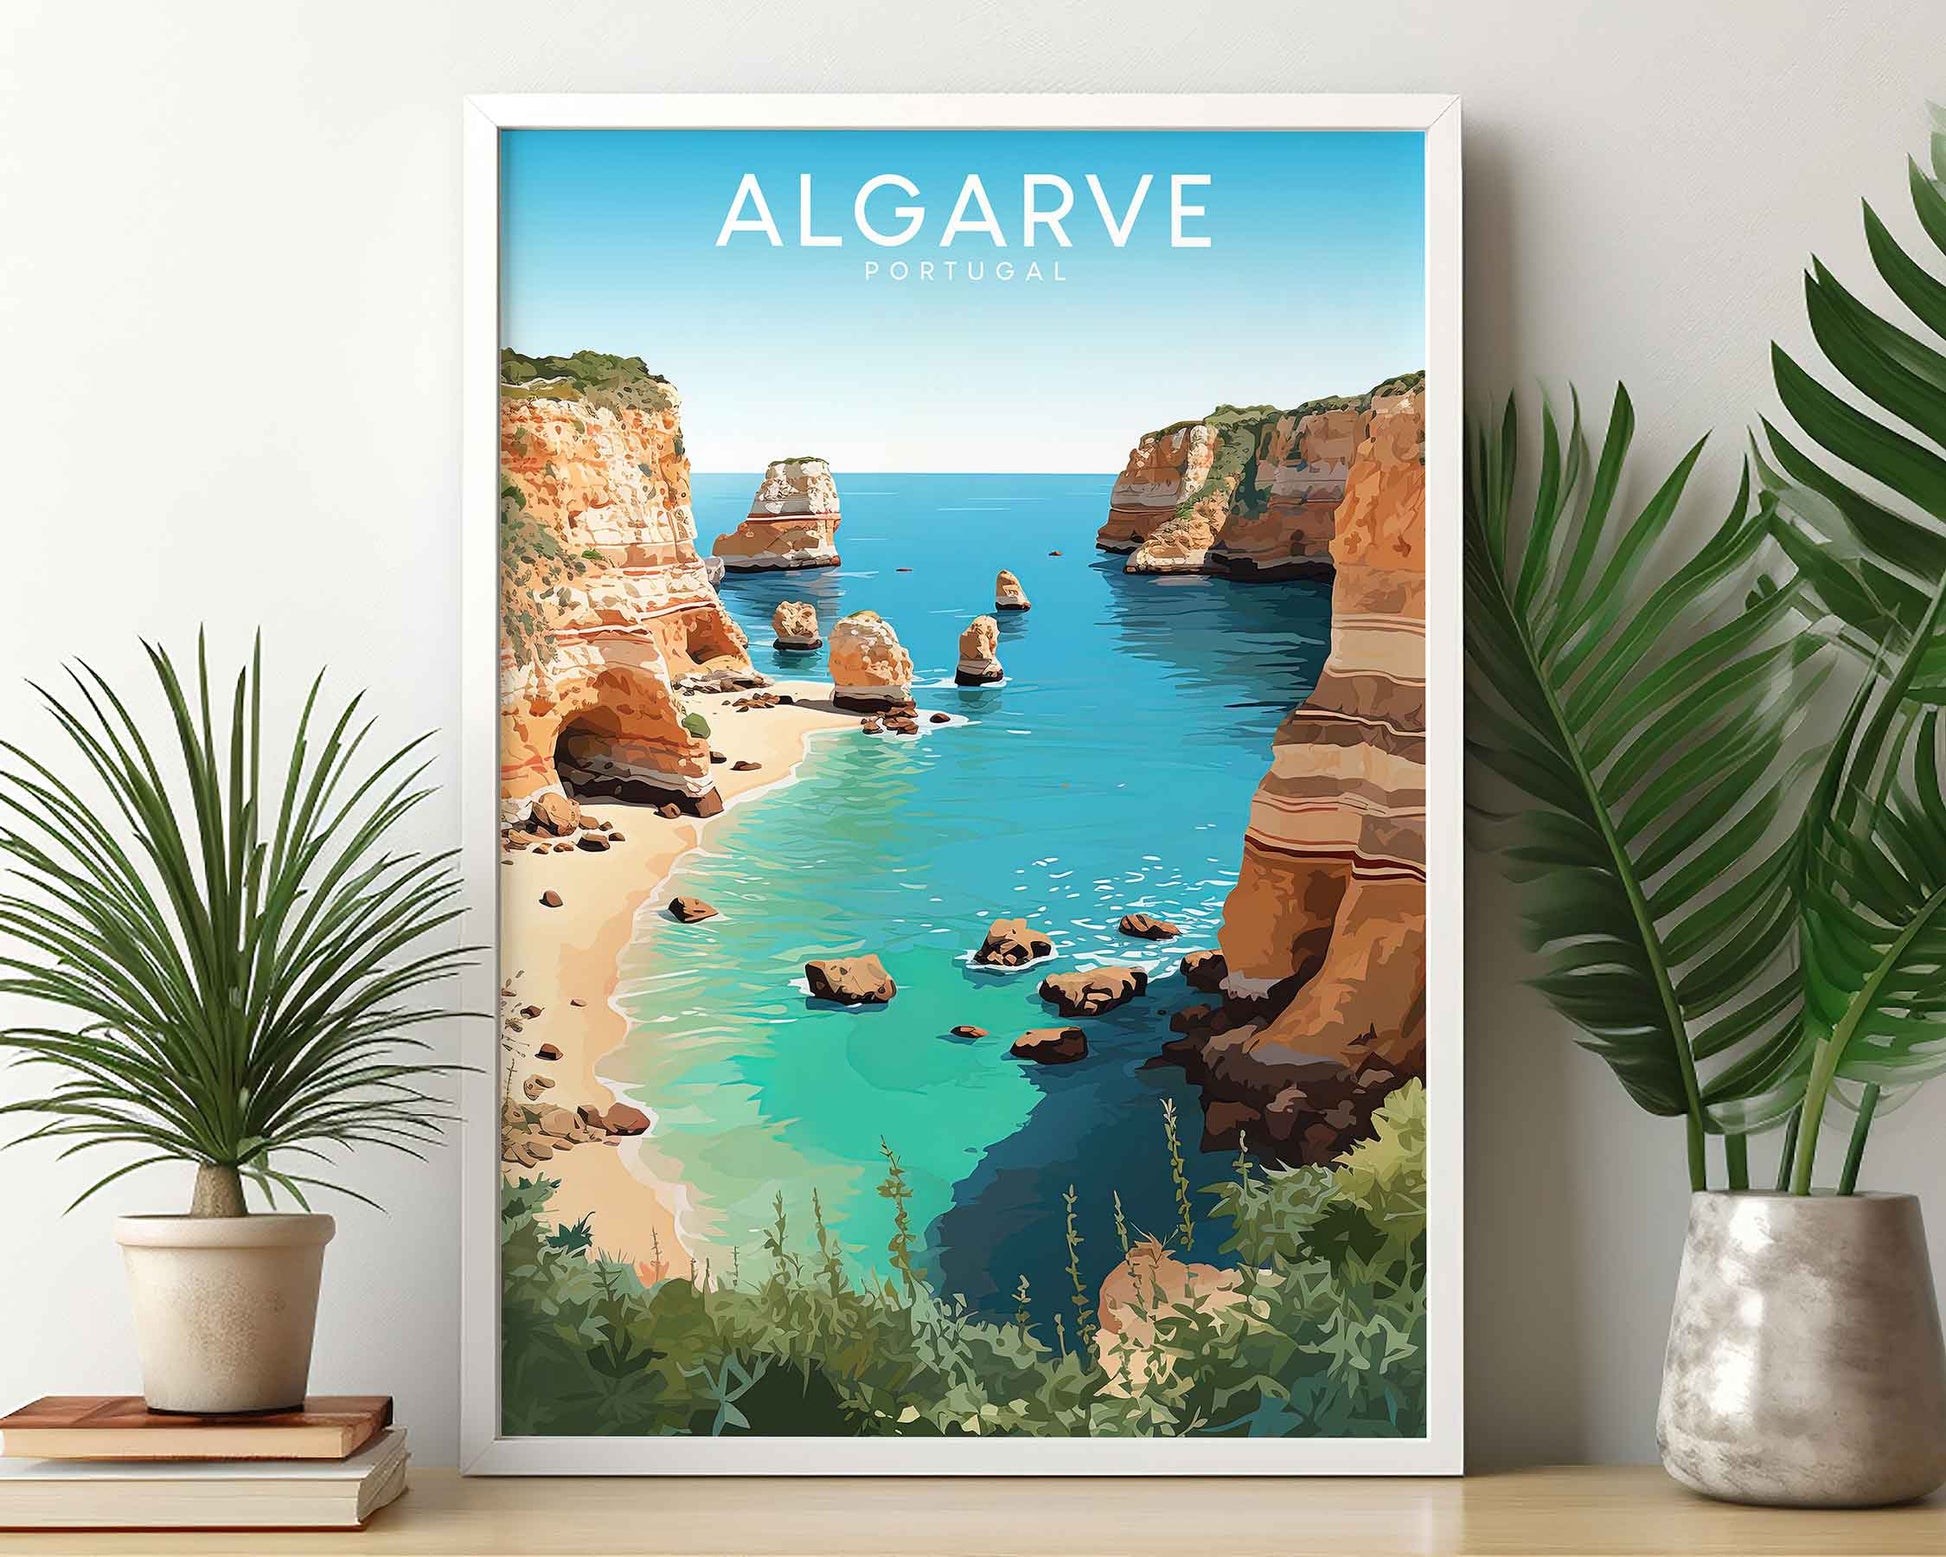 Framed Image of Algarve Portugal Travel Wall Art Poster Prints Illustration